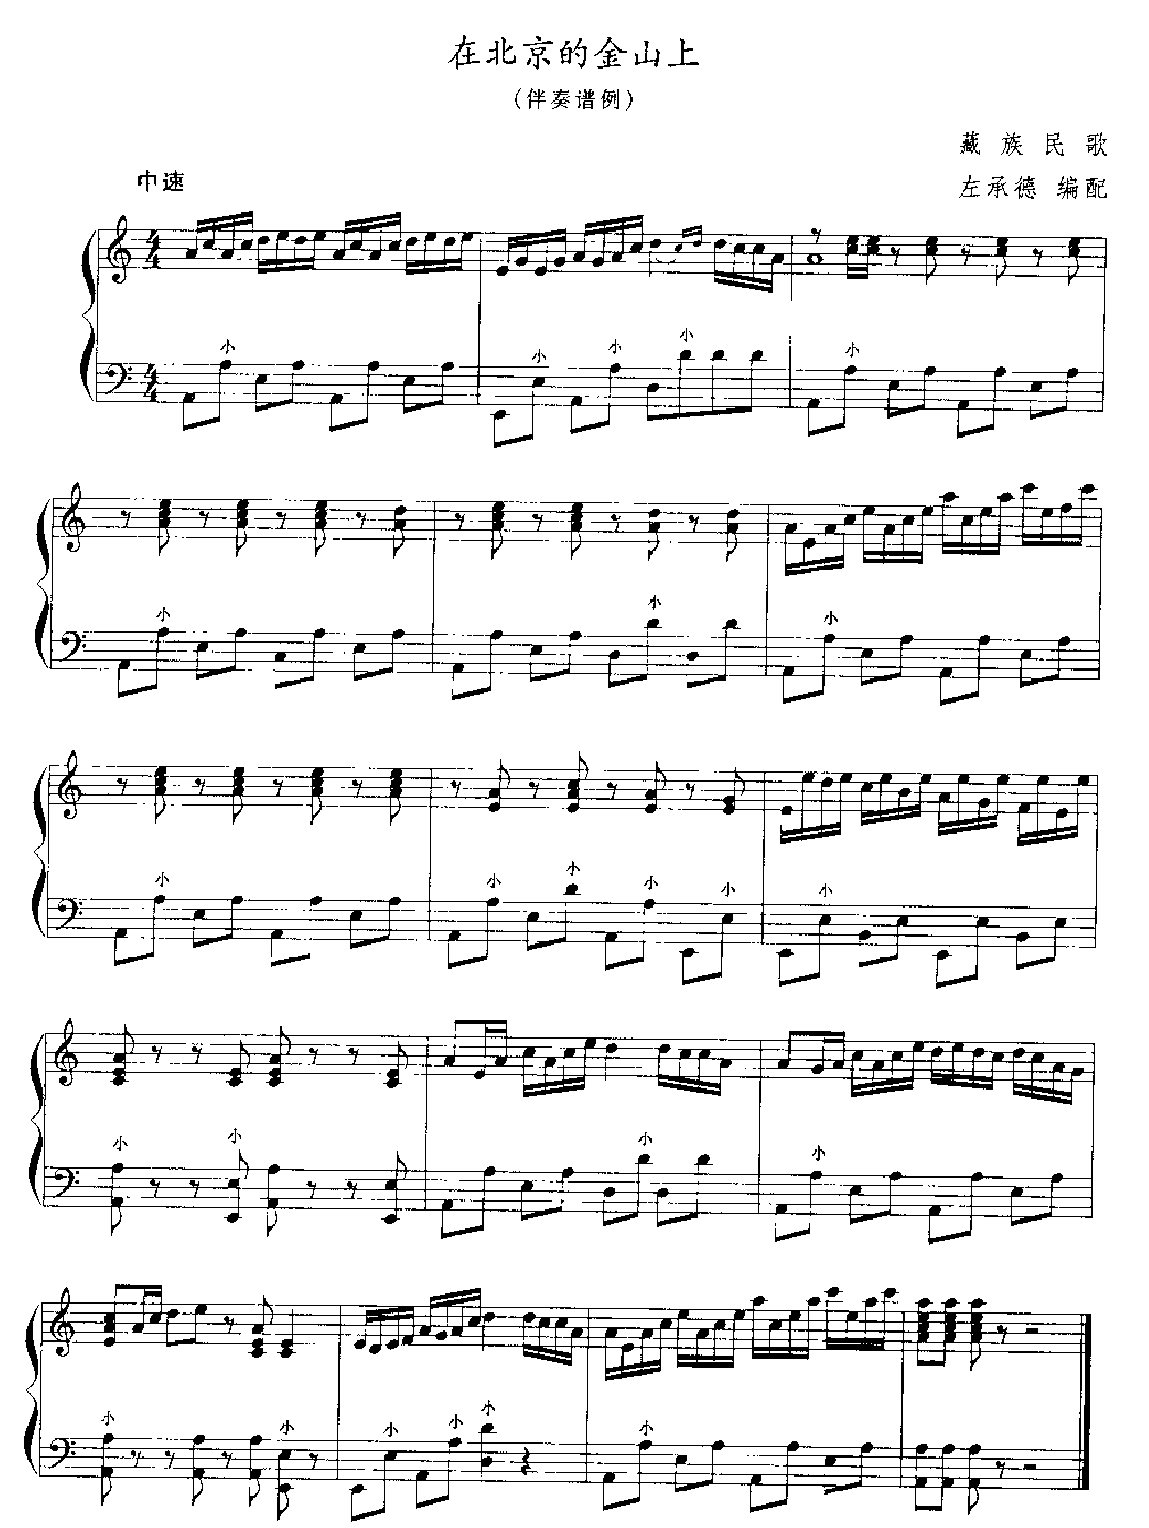 应掌握的几种手风琴伴奏类型9